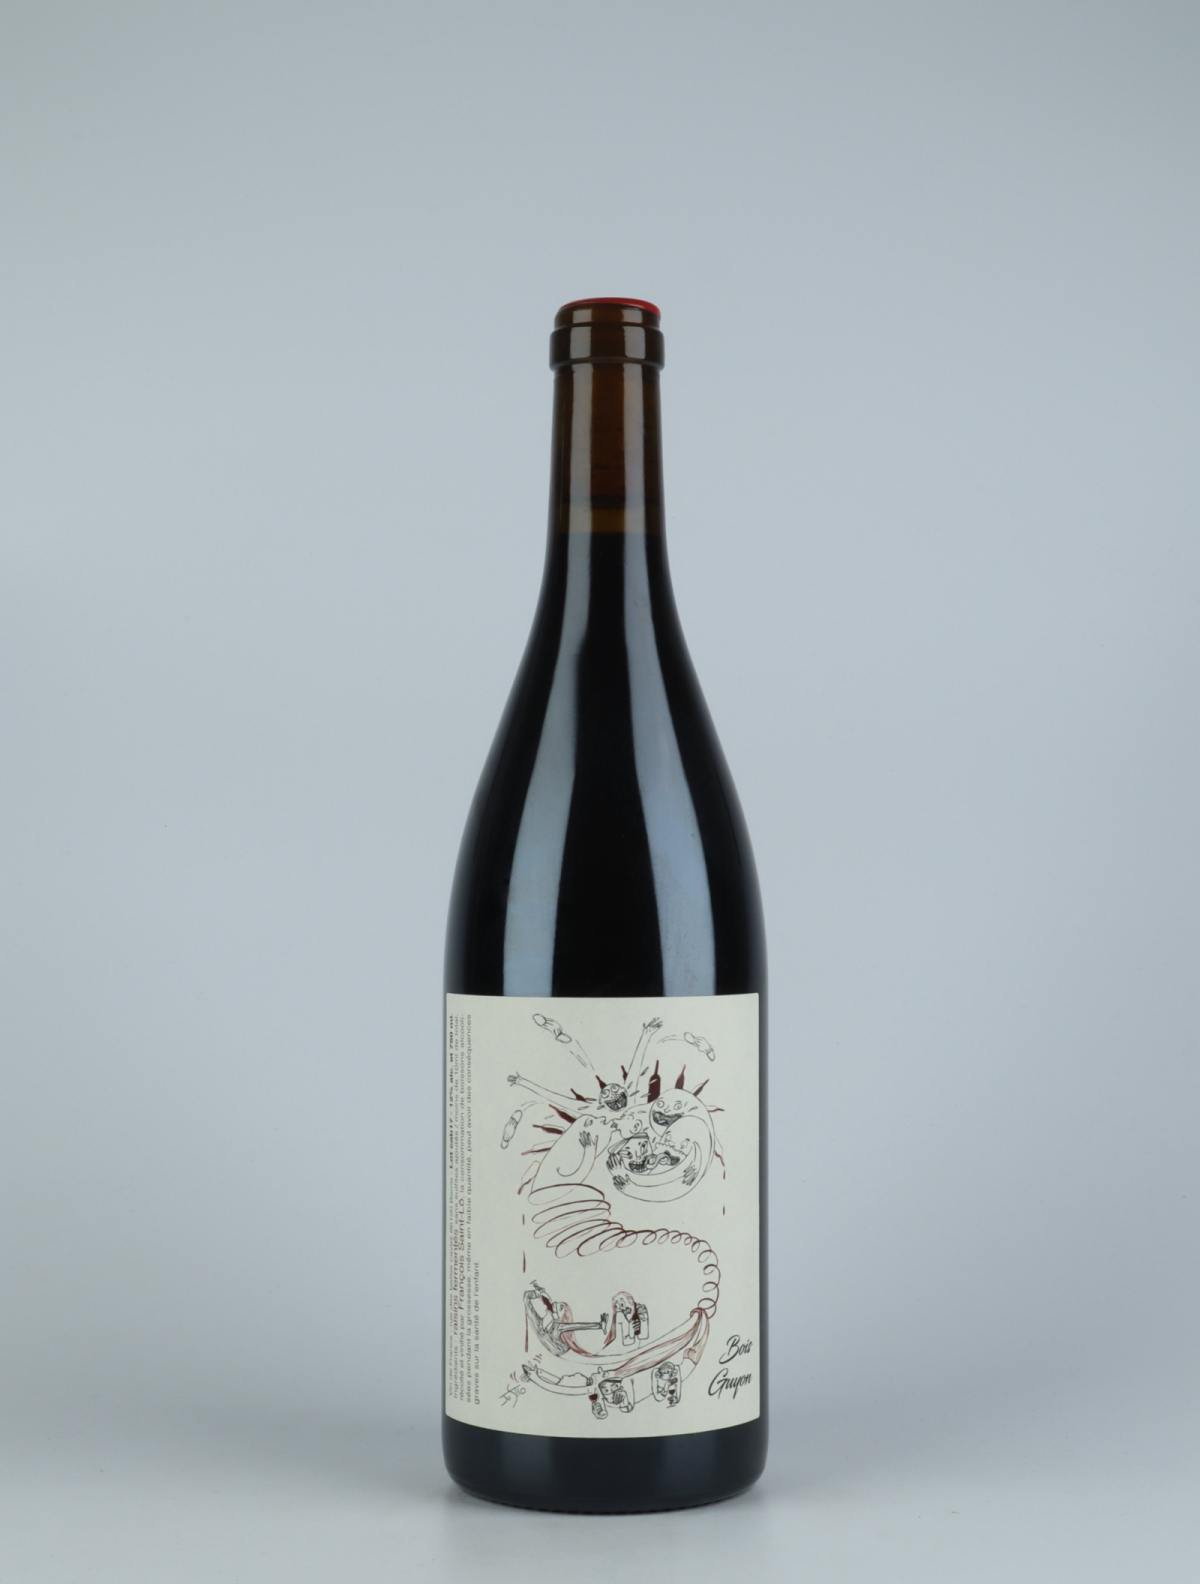 A bottle 2017 Bois Guyon Red wine from François Saint-Lô, Loire in France